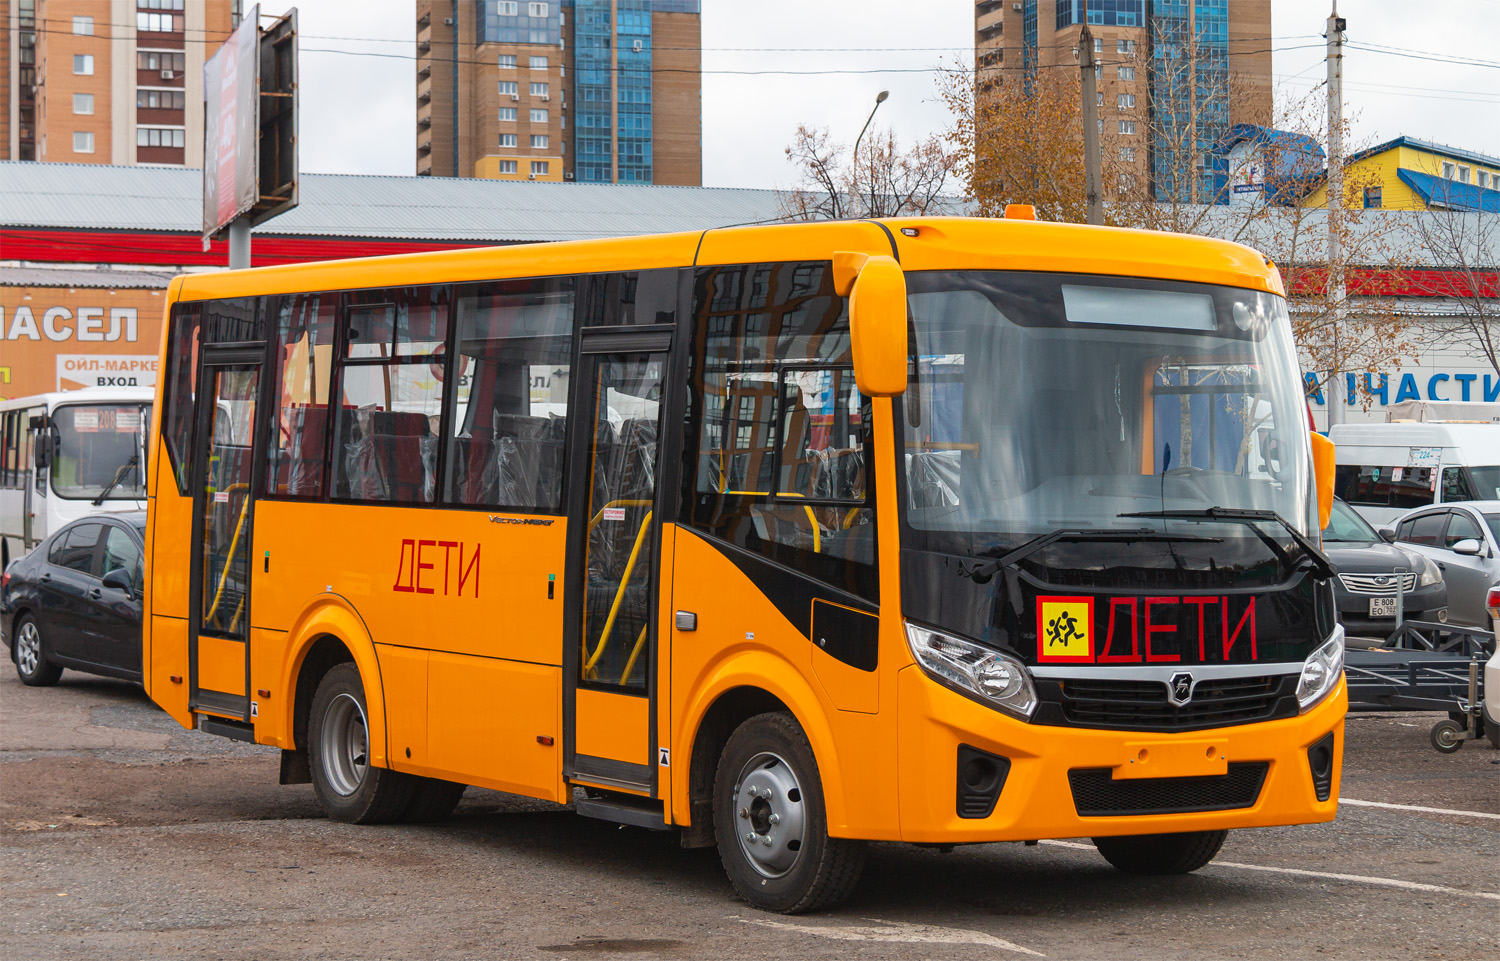 Bashkortostan — New bus